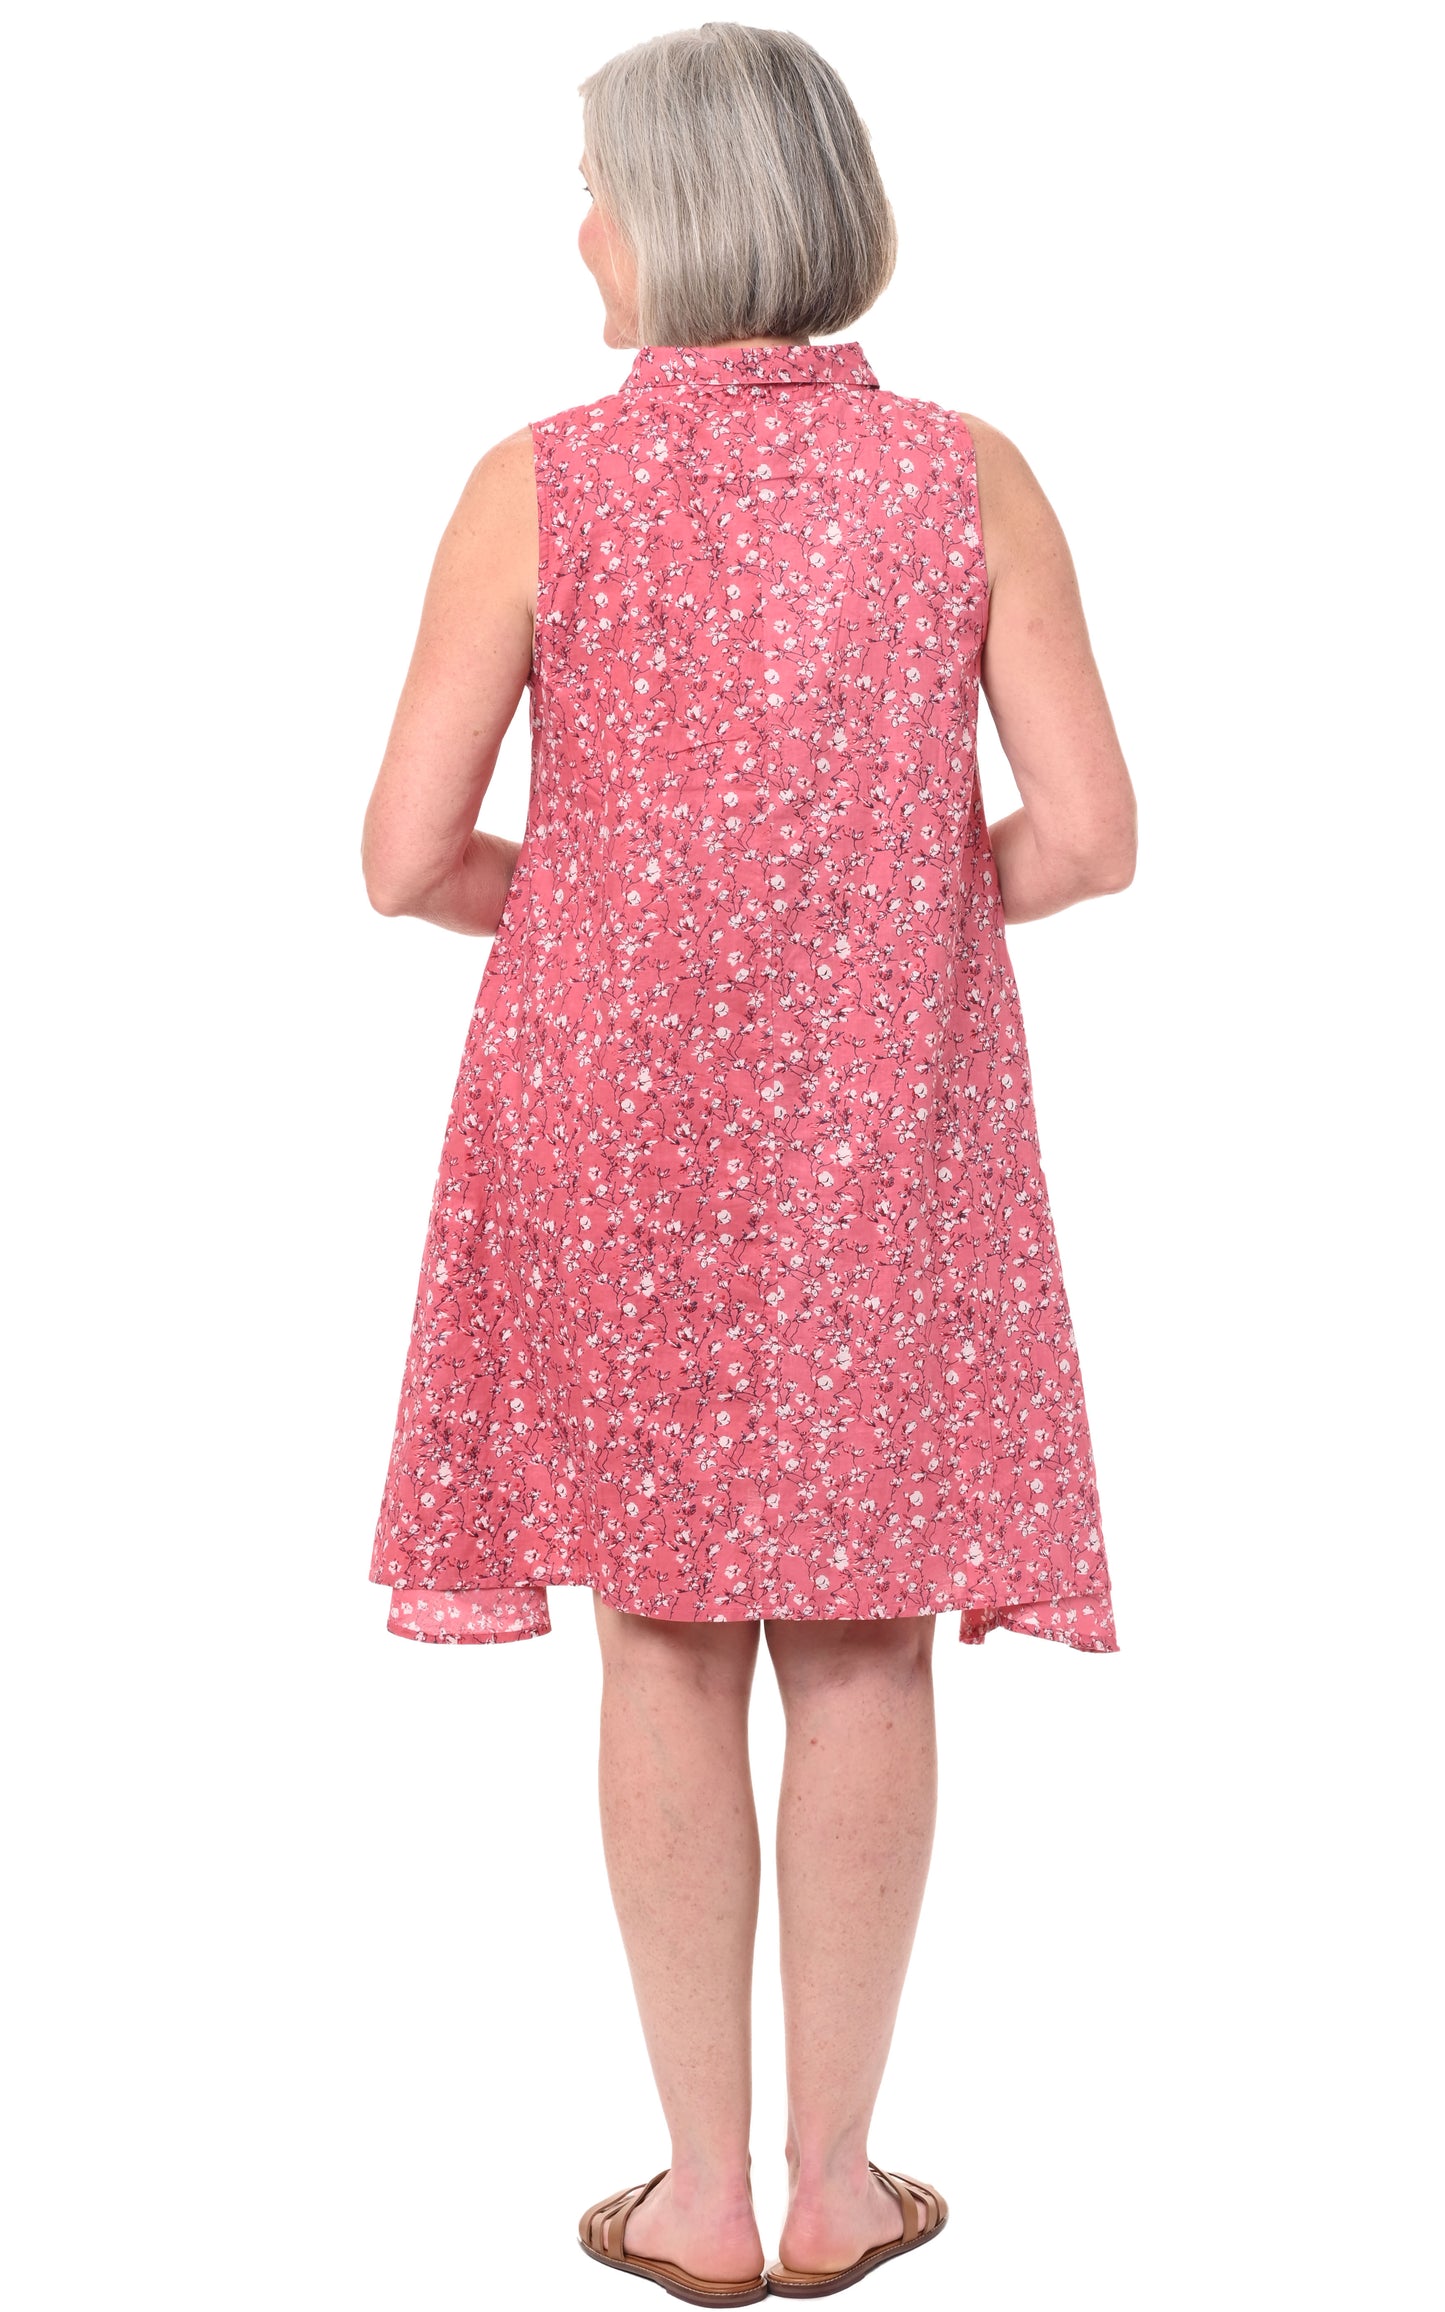 CV1027 Bree Dress in Blossom*